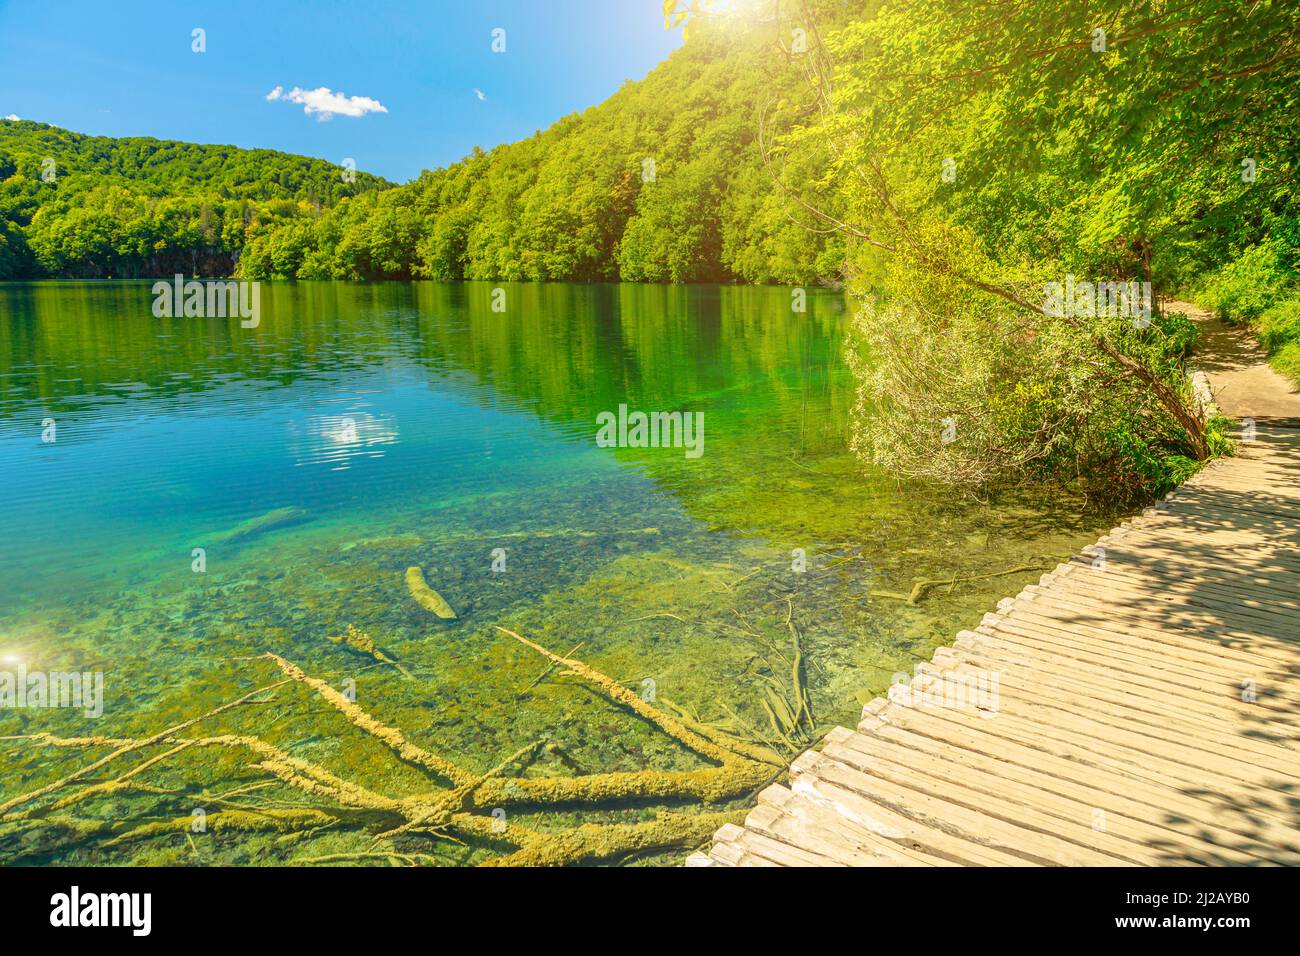 Jetée en bois du parc national des lacs de Plitvice, en Croatie, dans la région de Lika. Patrimoine mondial de l'UNESCO de la Croatie appelé Plitvicka Jezera. Banque D'Images